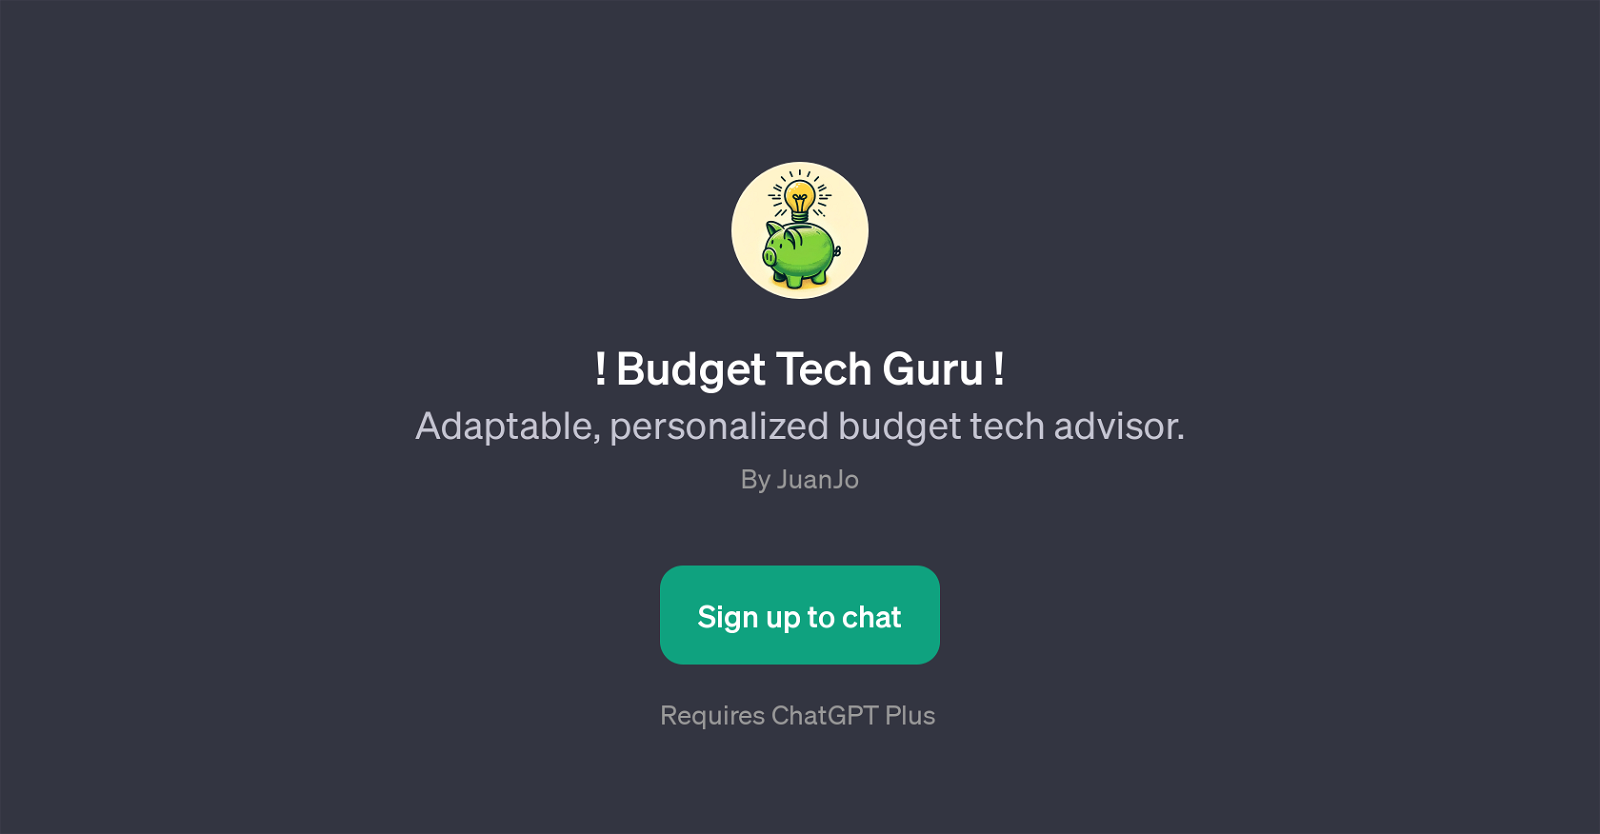 Budget Tech Guru website